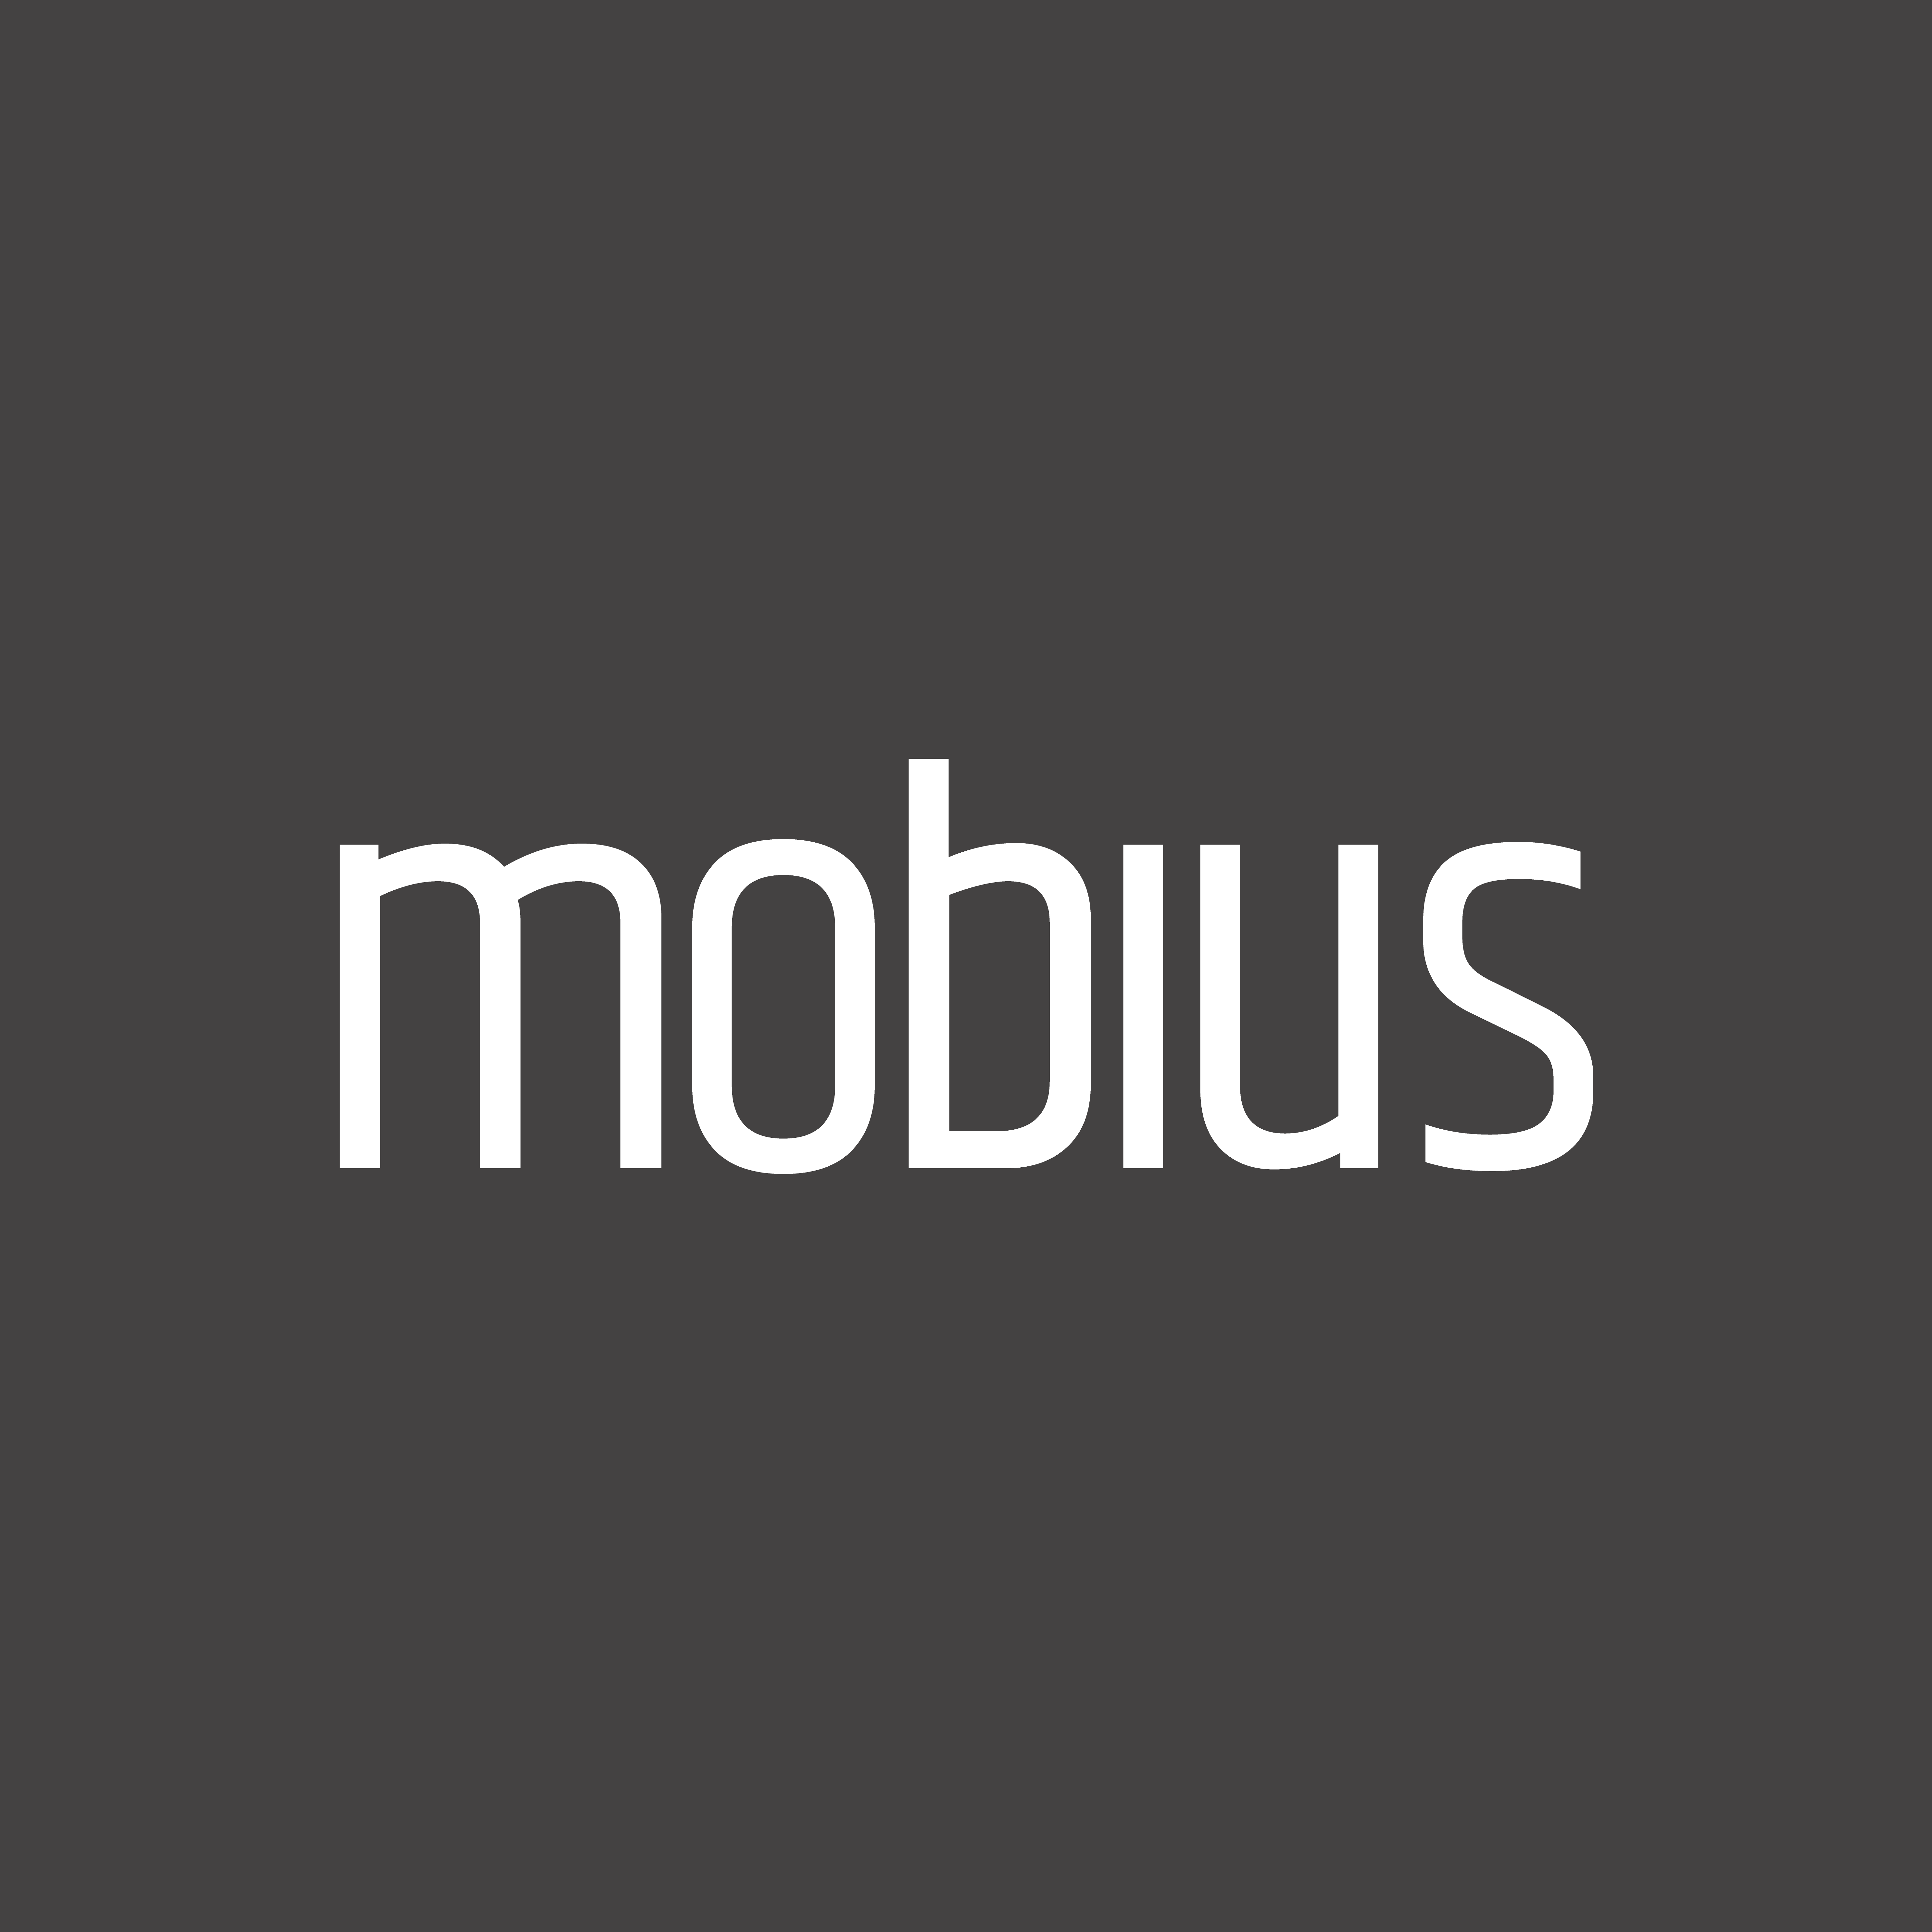 Mobius At Work Ltd